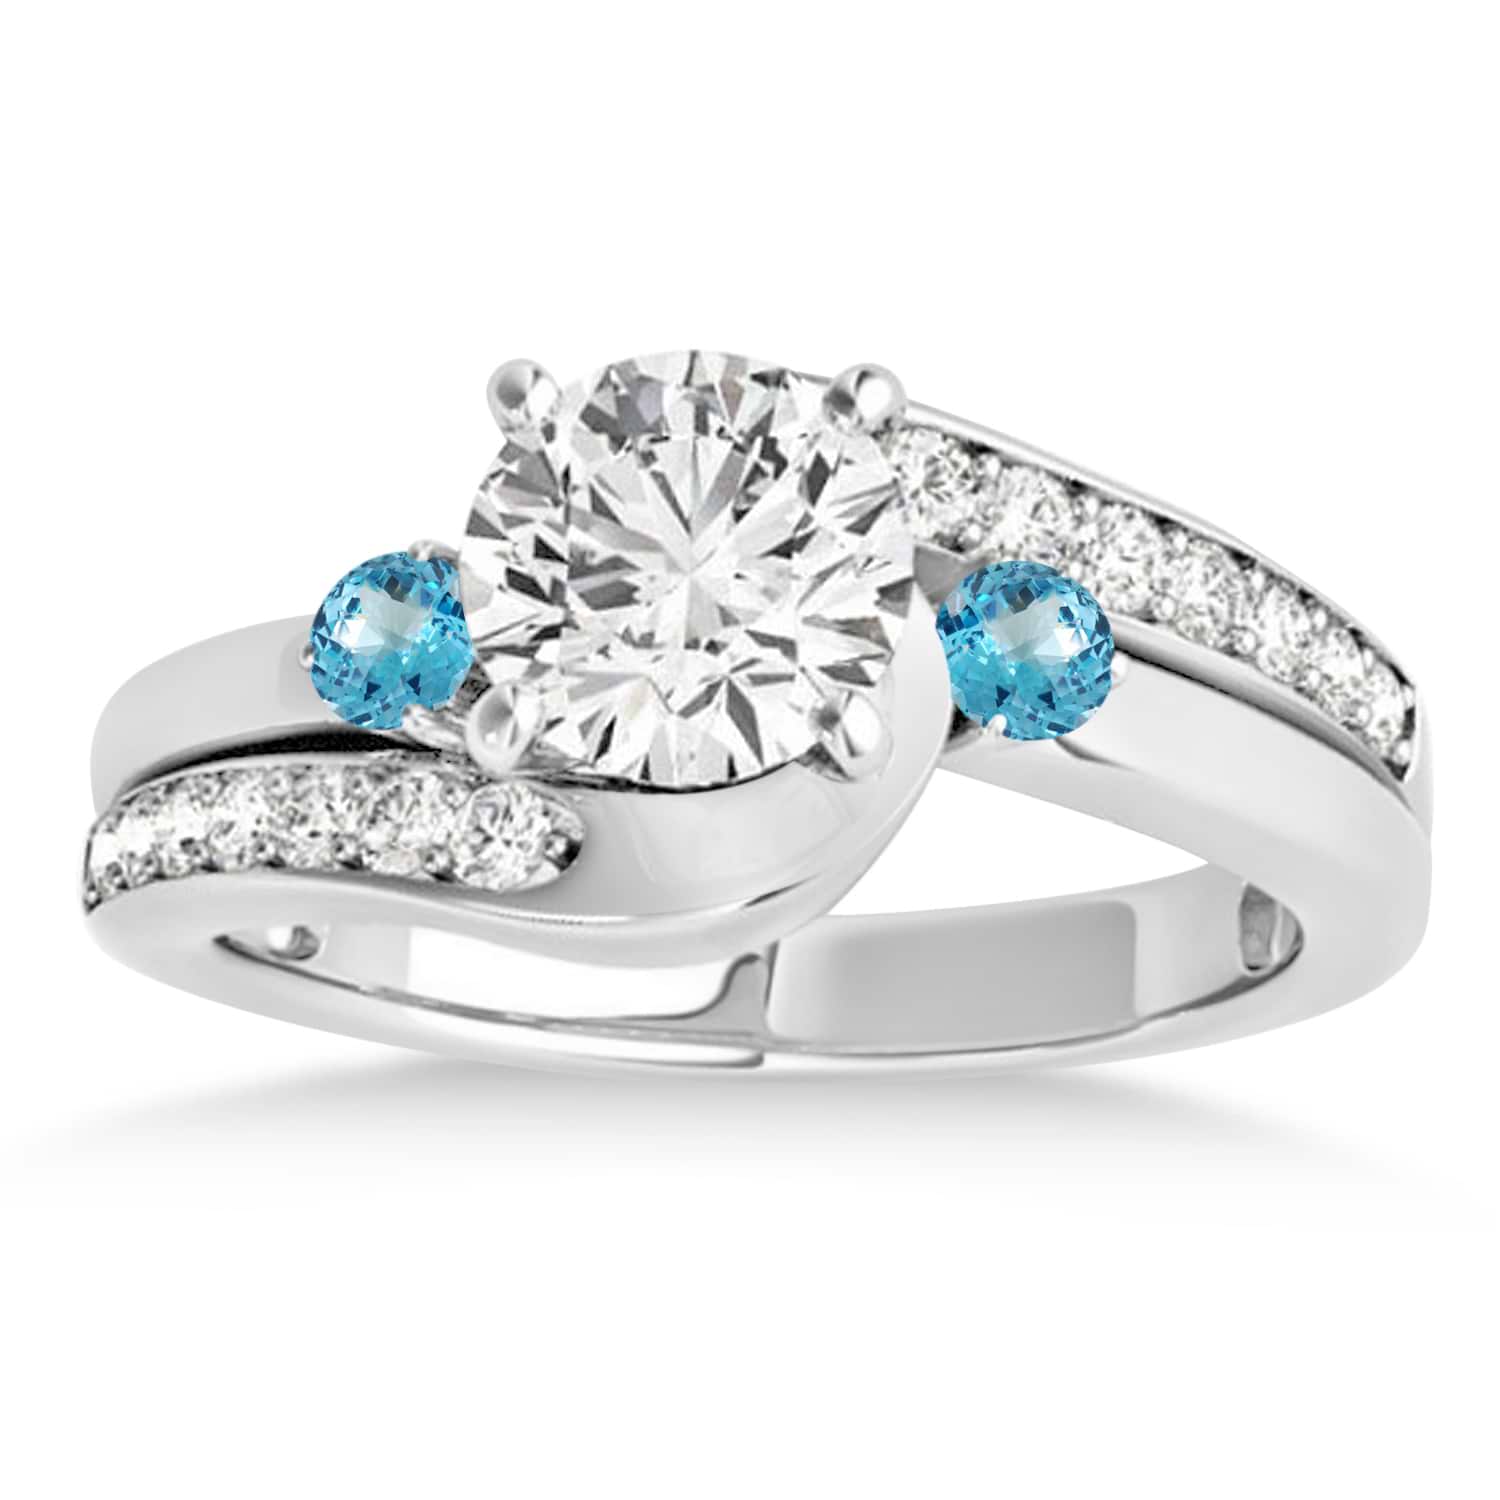 Swirl Design Blue Topaz & Diamond Engagement Ring Setting 18k White Gold 0.38ct